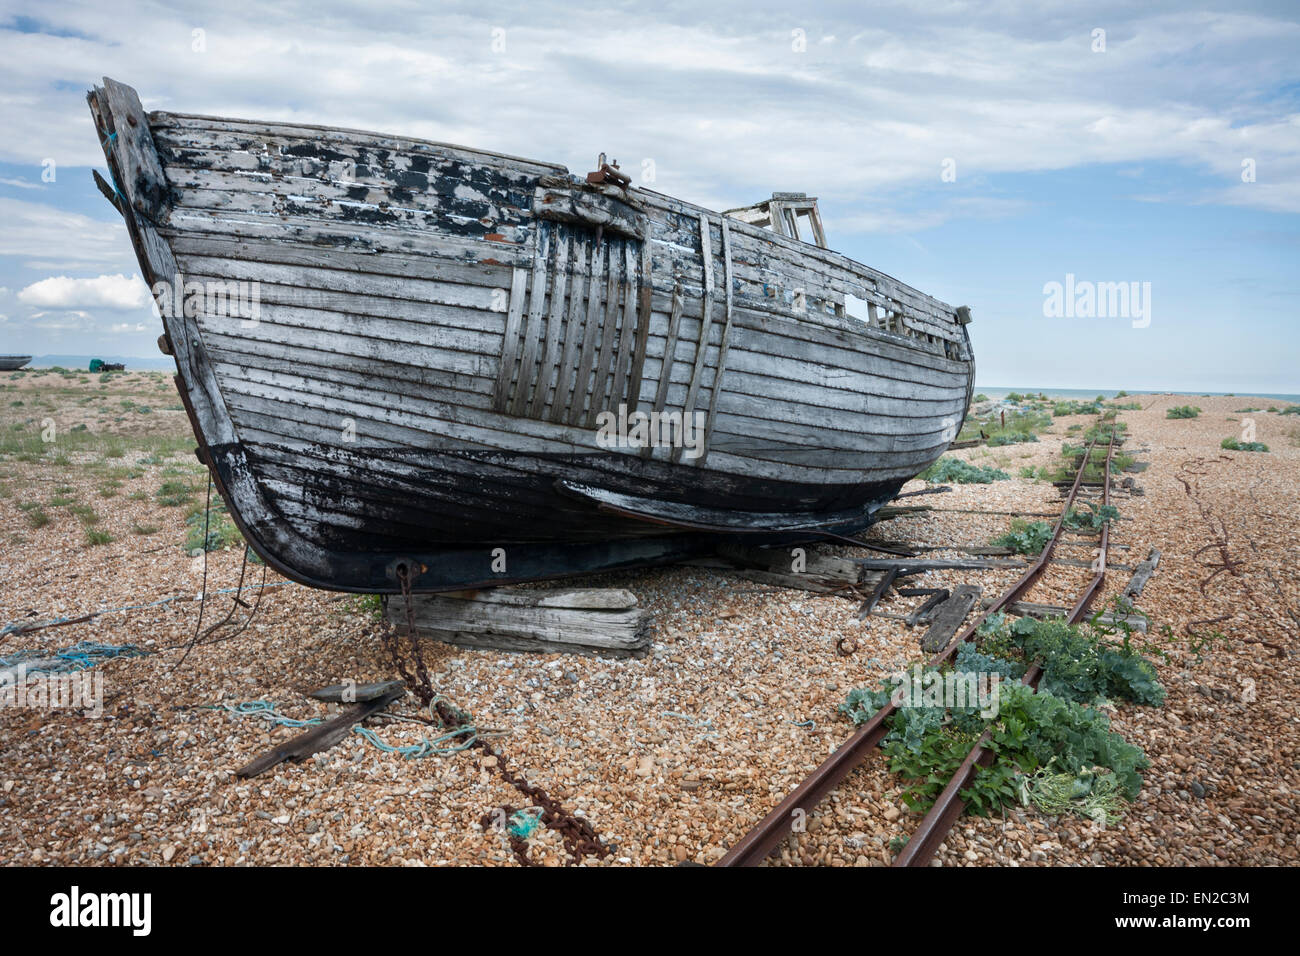 Vieille épave de bateau de pêche abandonnés, Dungeness, Kent, England, UK Banque D'Images